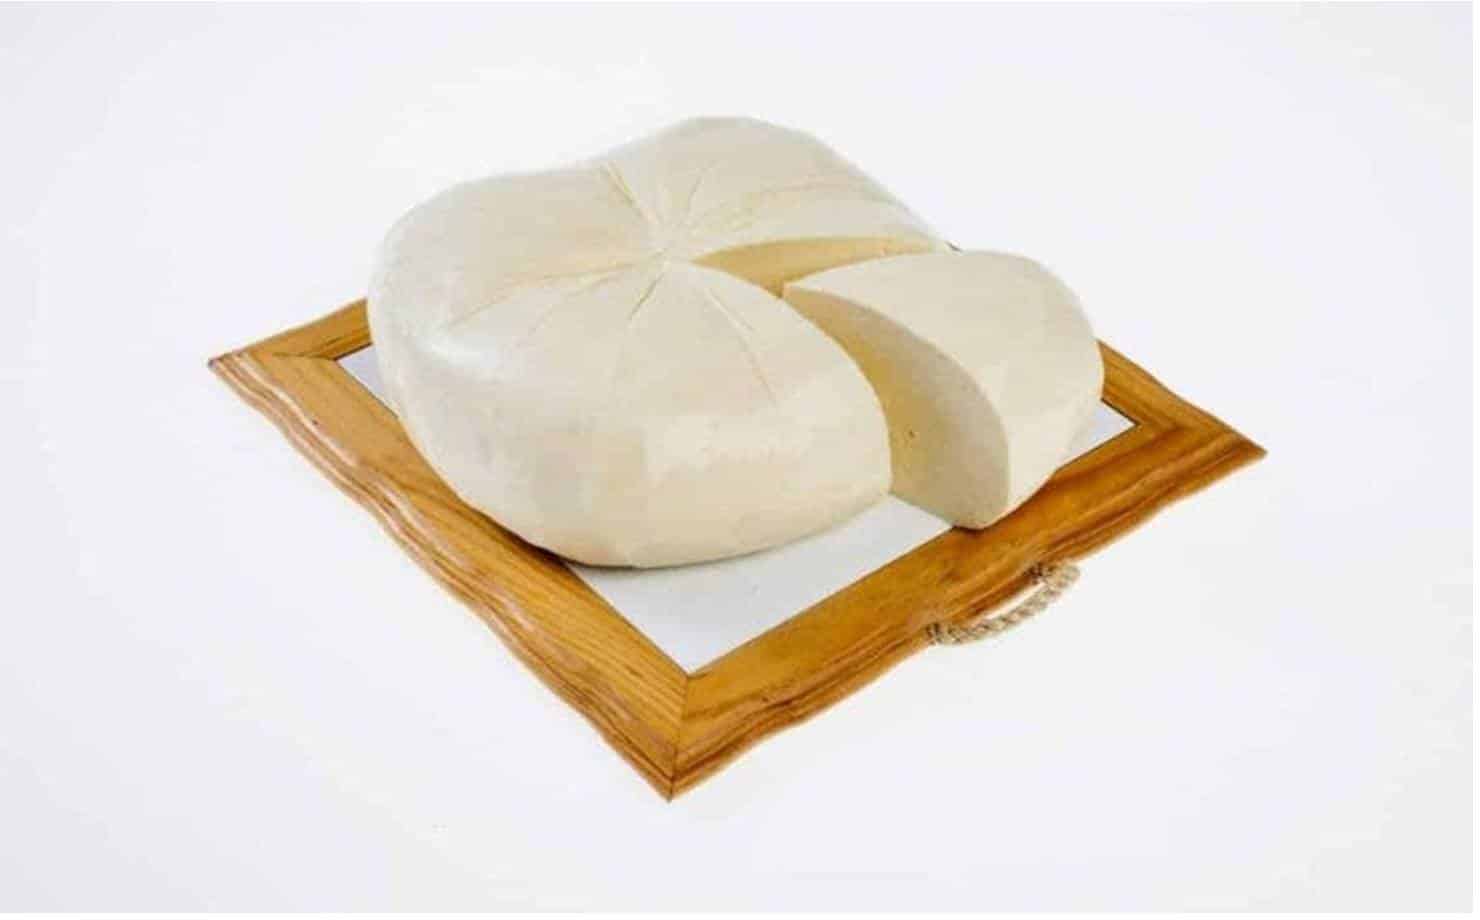 Receita Fácil: aprenda a preparar queijo fresco em casa 